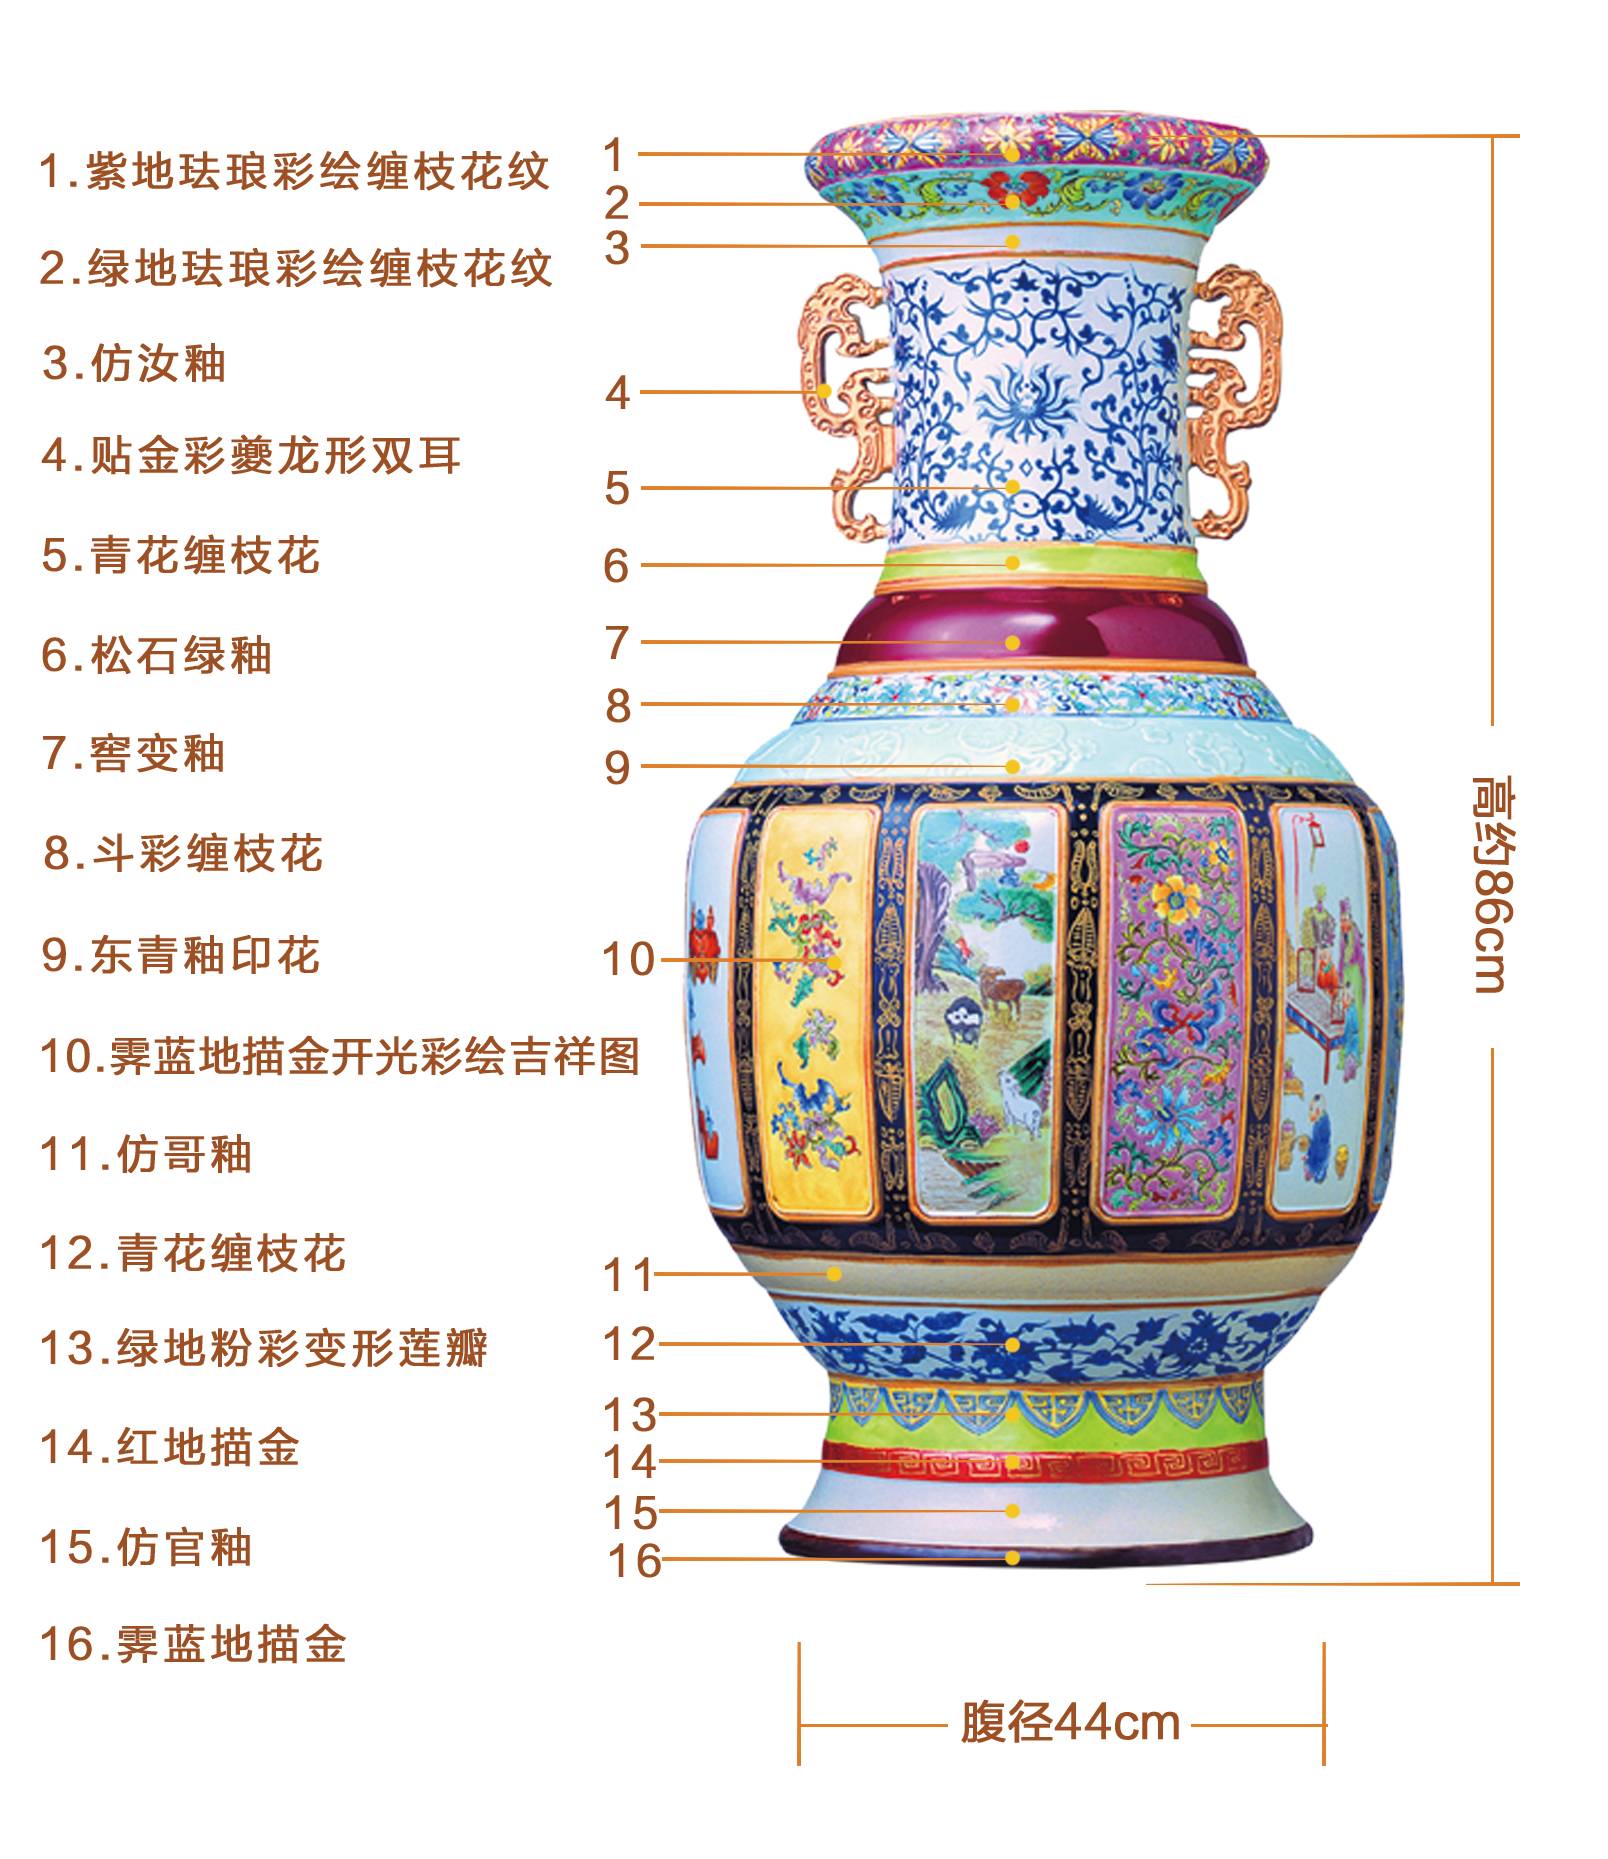 藏于故宫博物院的特一级文物——《中华瓷王》引领文物收藏热潮!